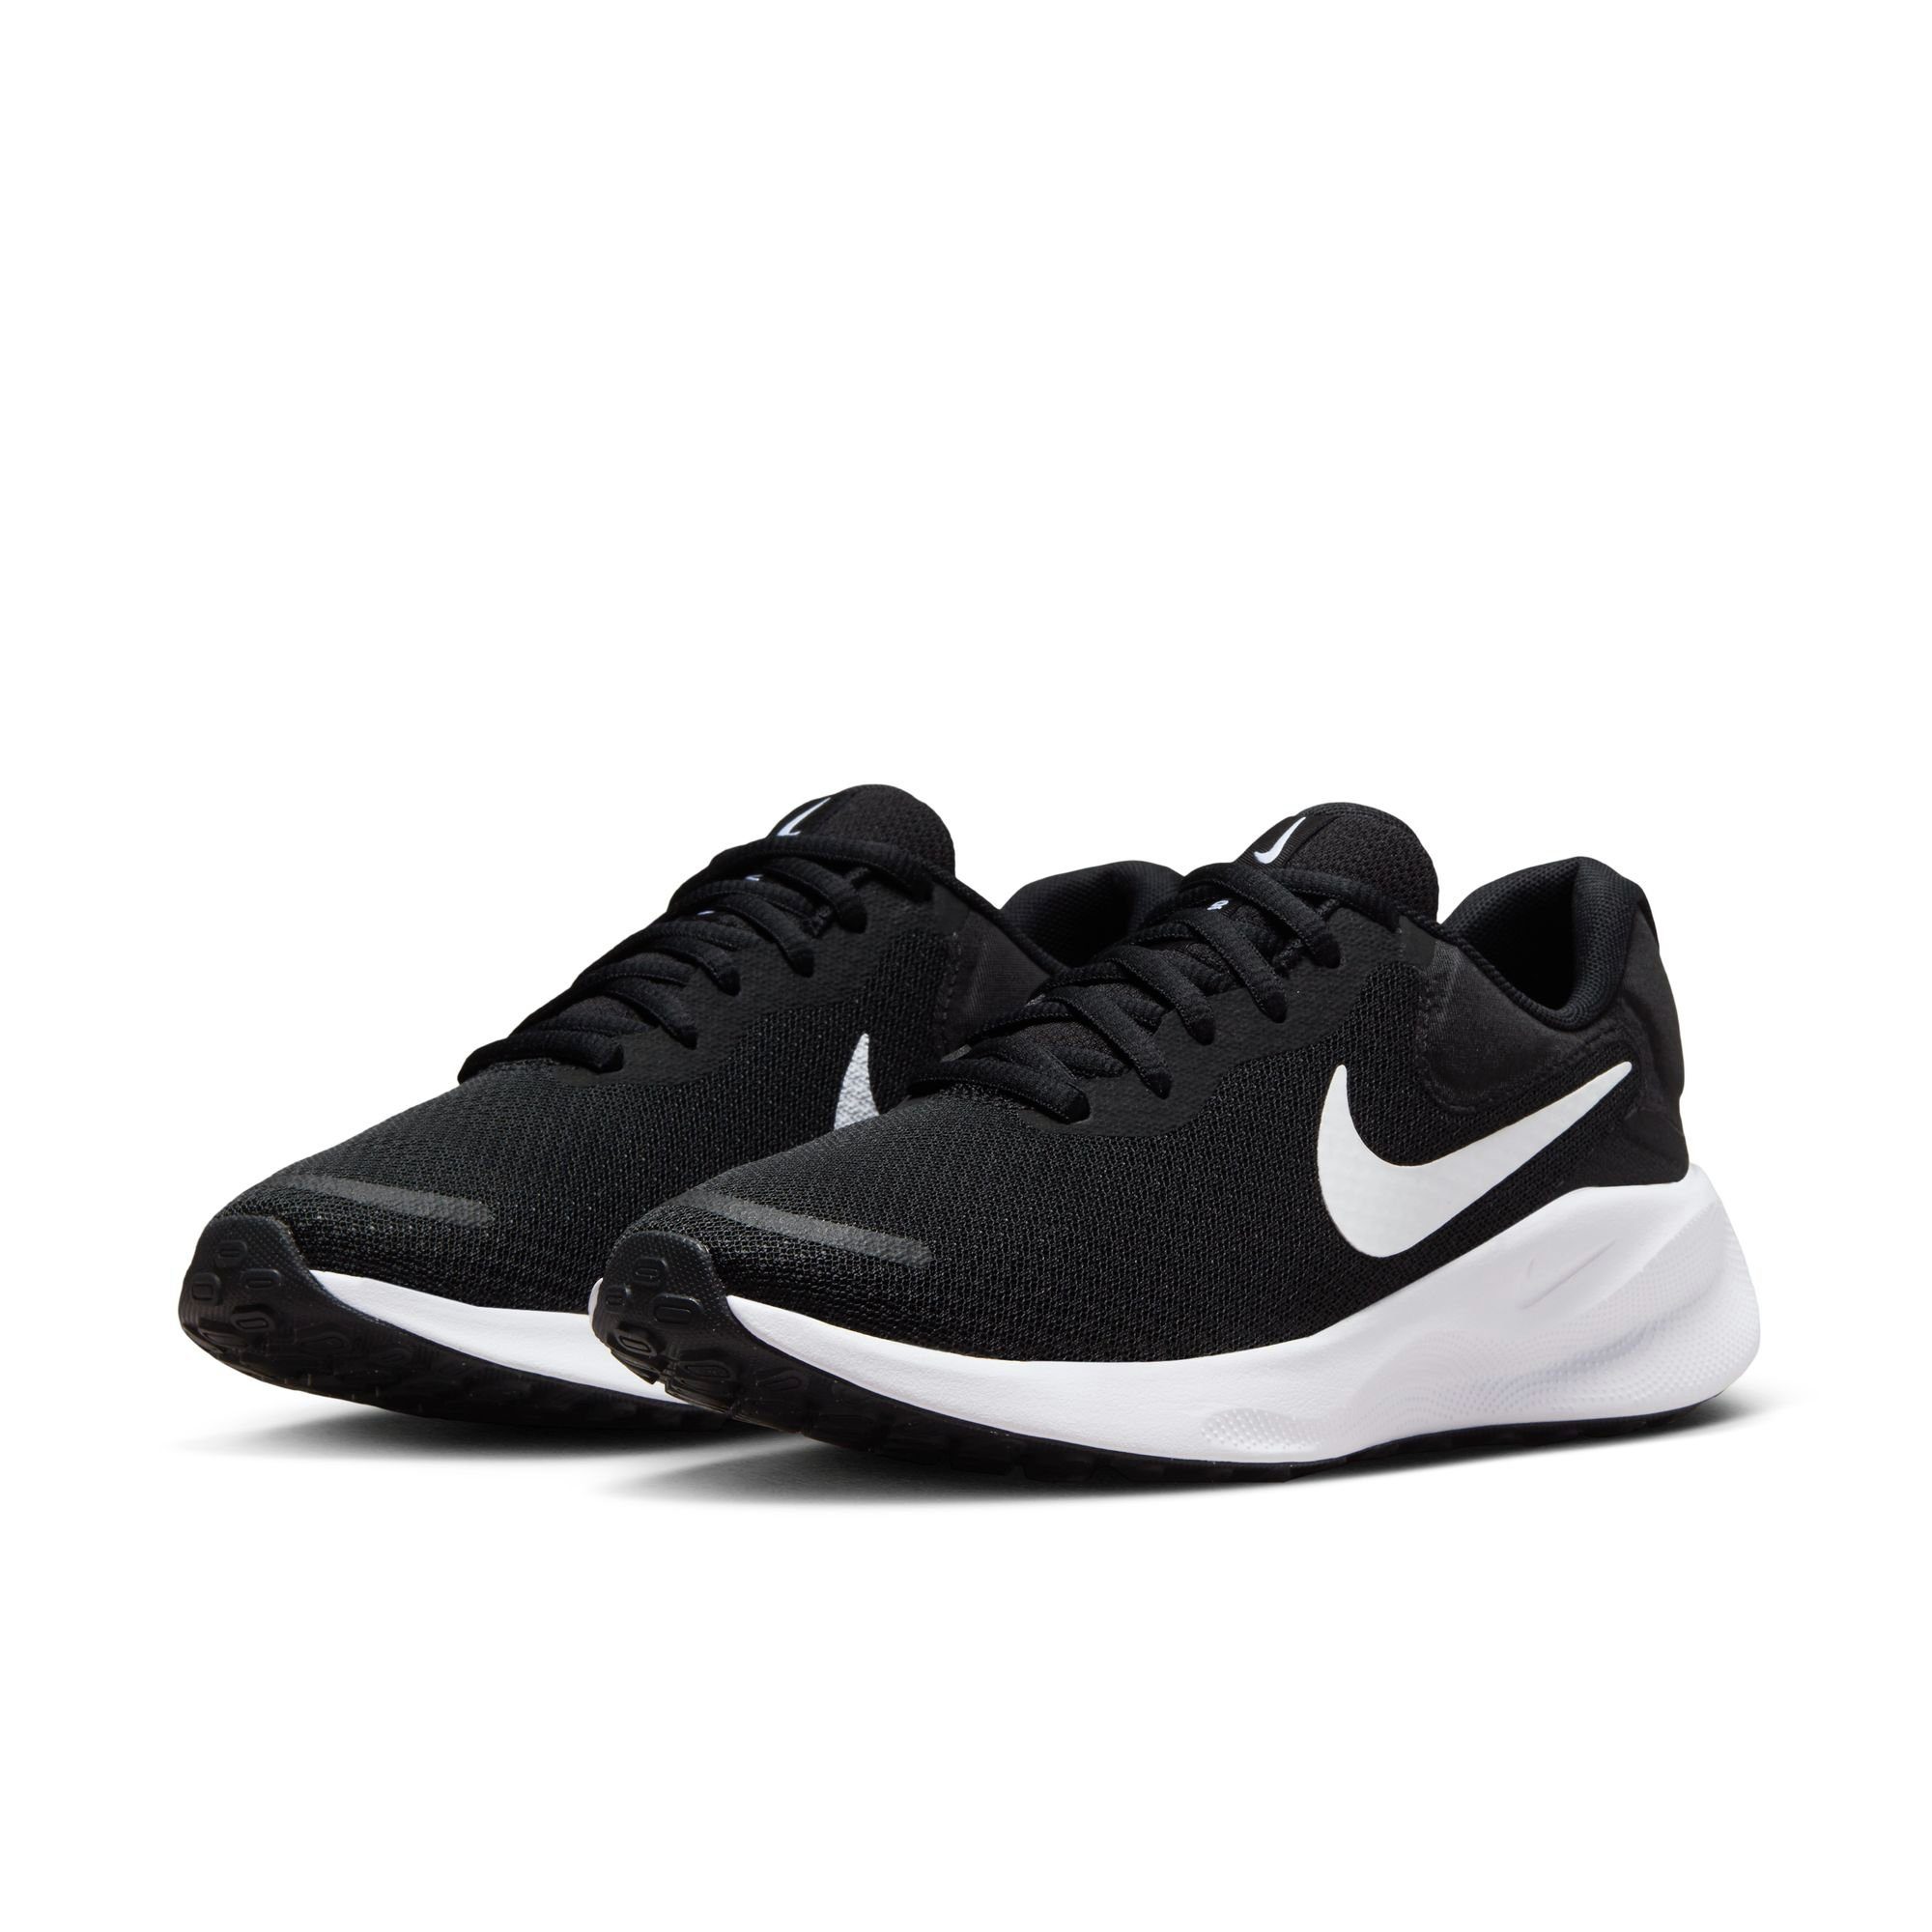 Schwarze Nike Sportschuhe online kaufen | OTTO